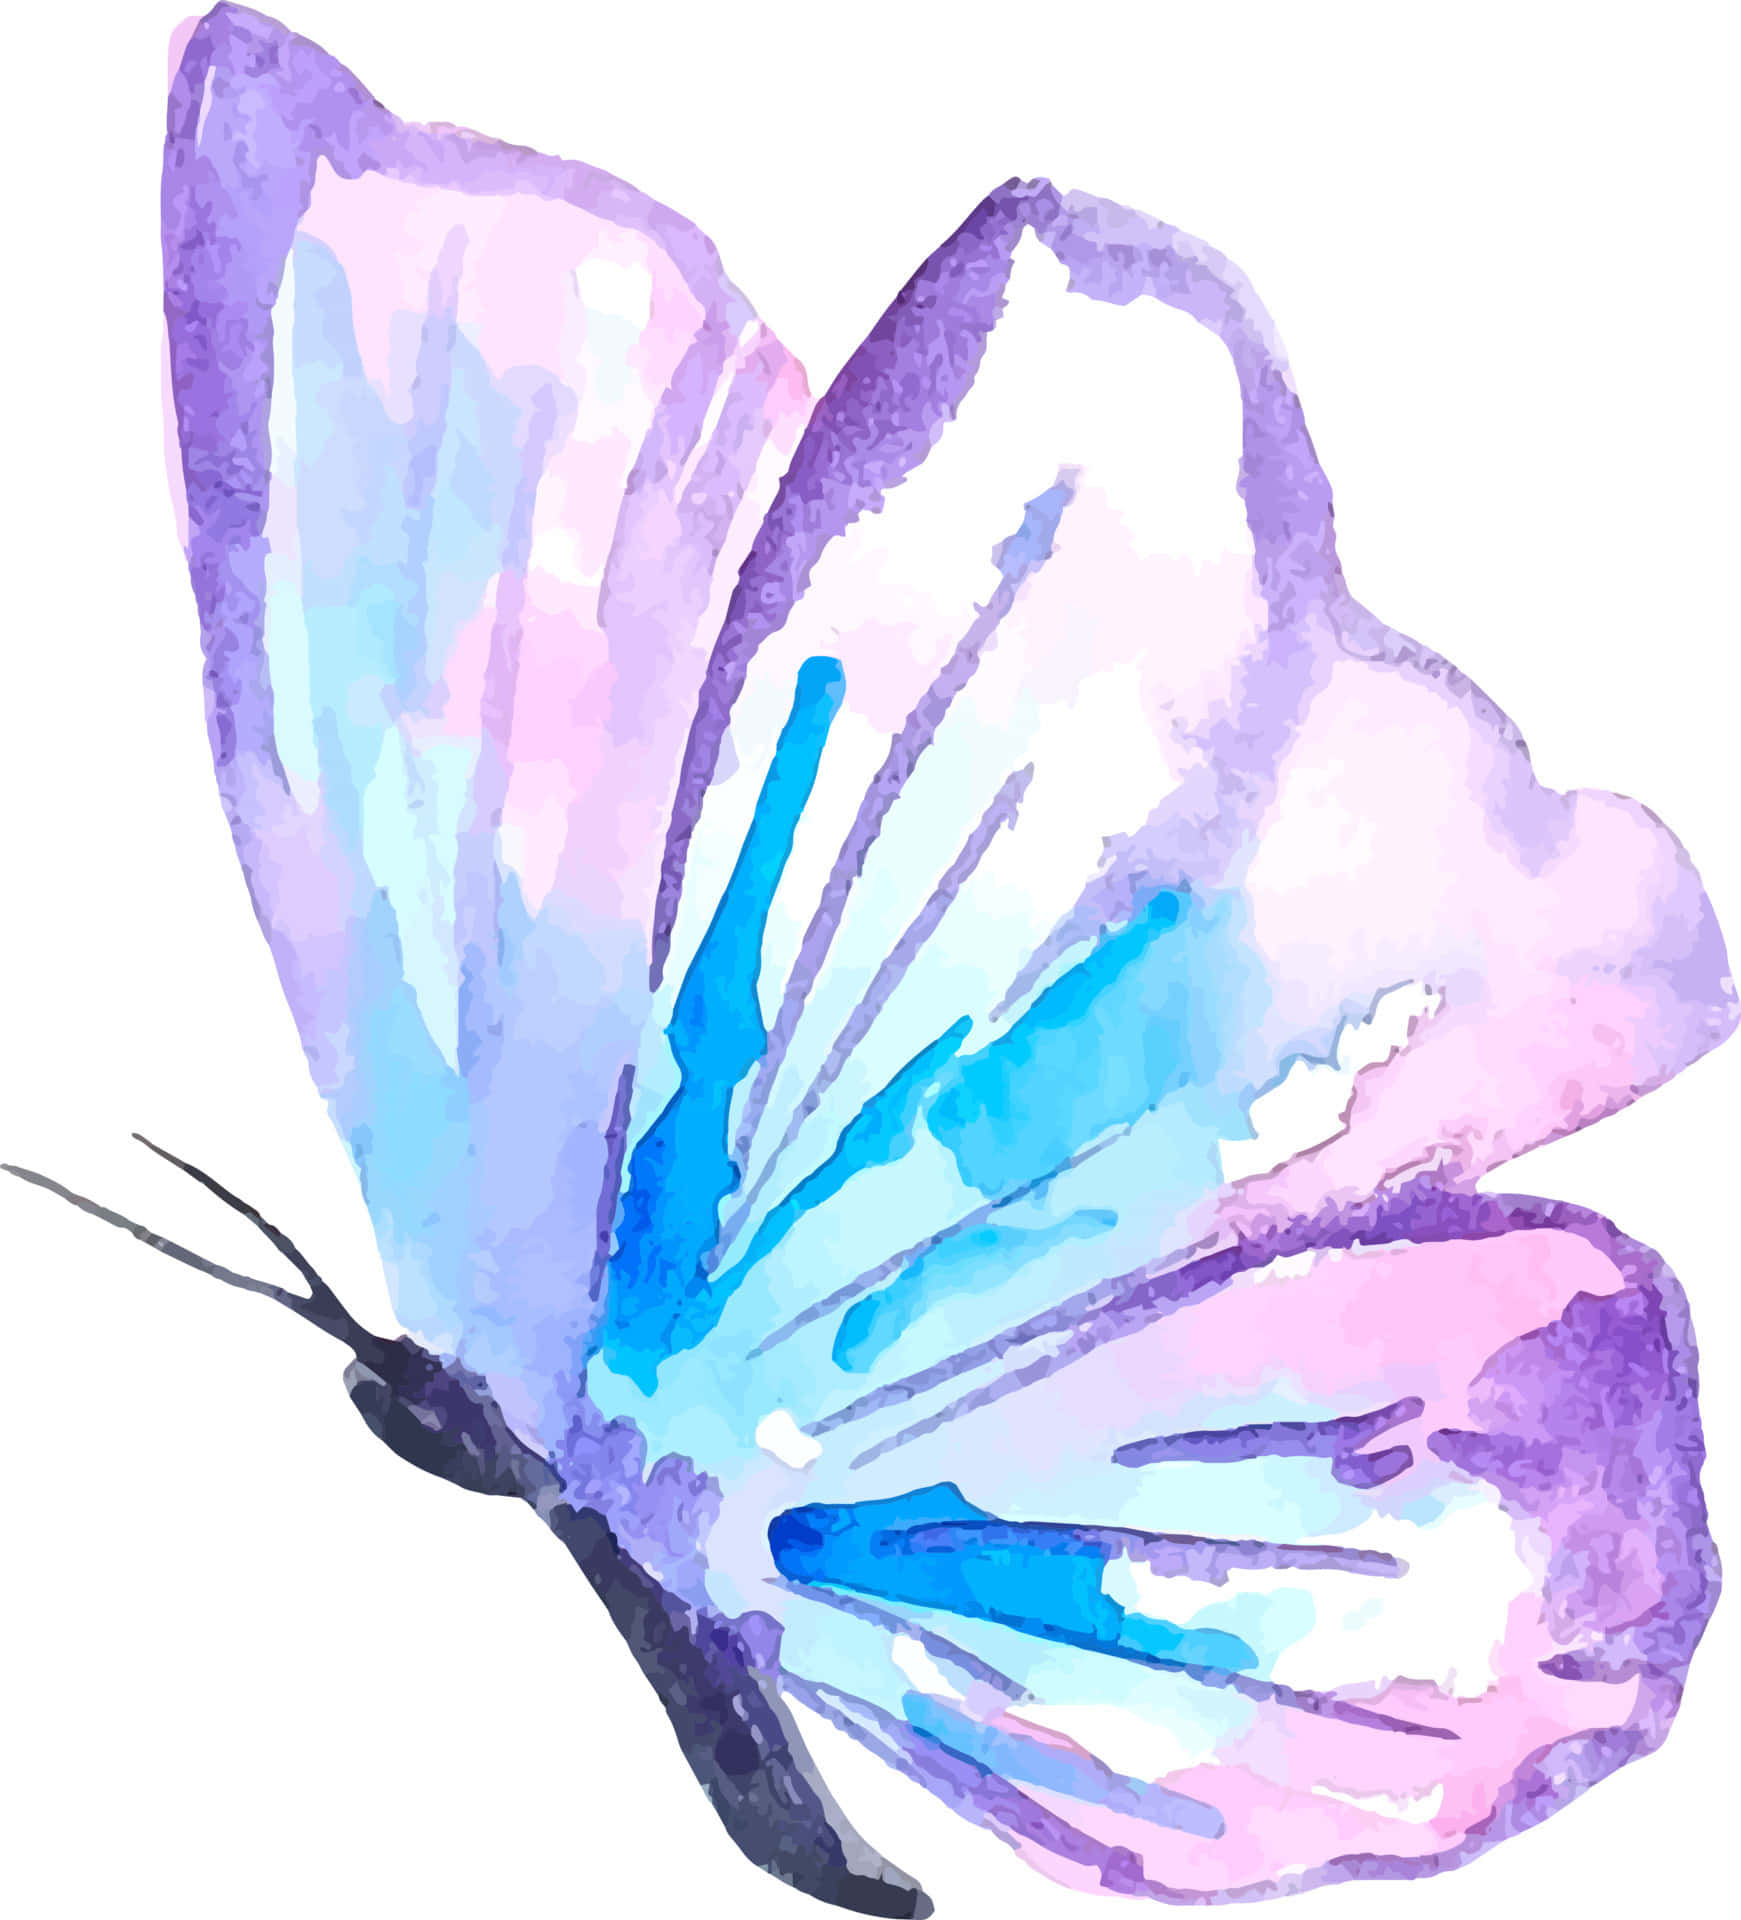 Hintergrundmit Lila Schmetterlingen